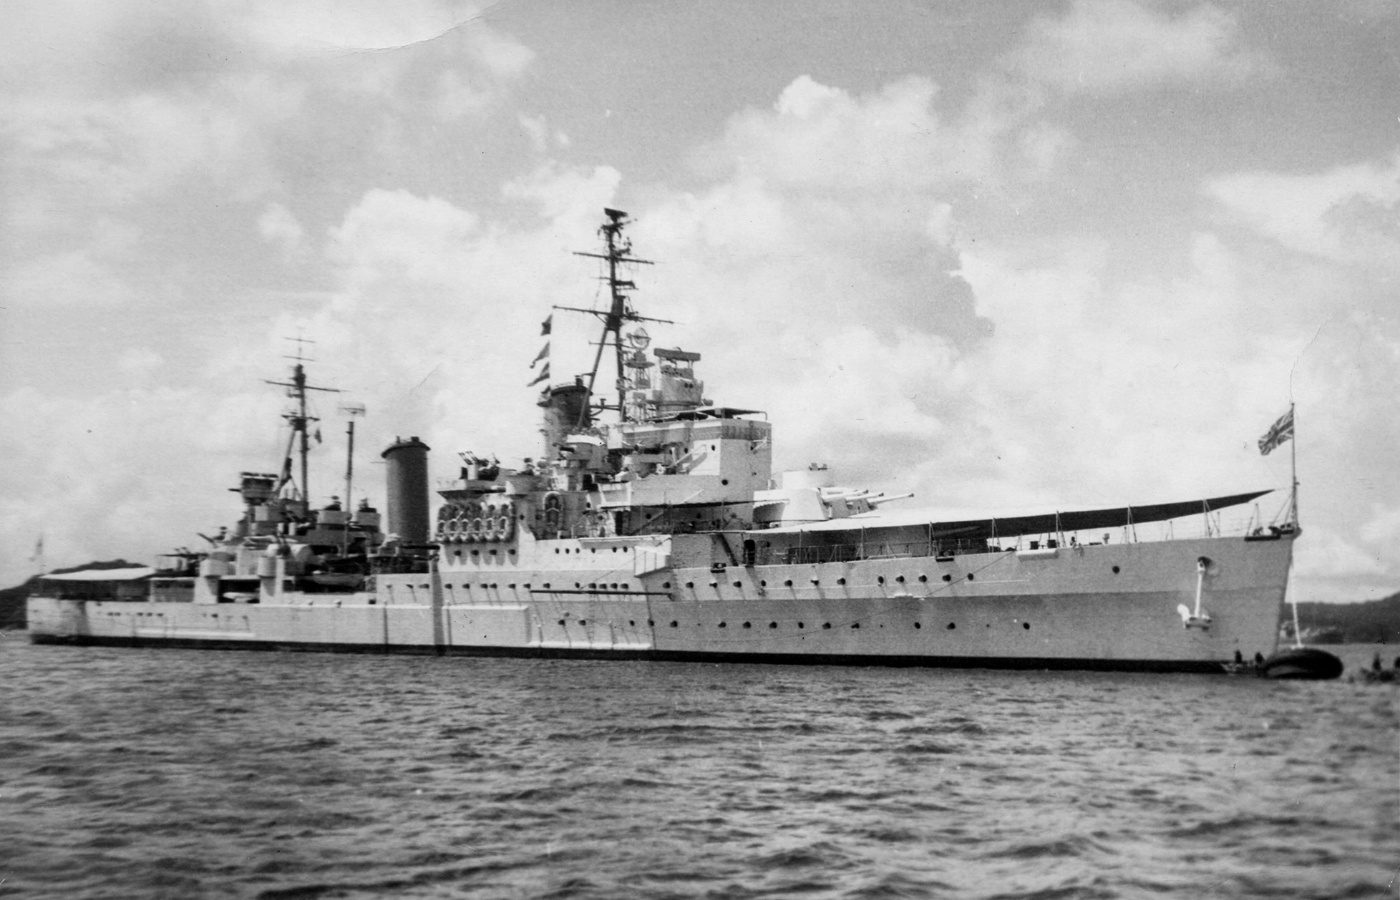 The Town Class cruiser HMS Glasgow.